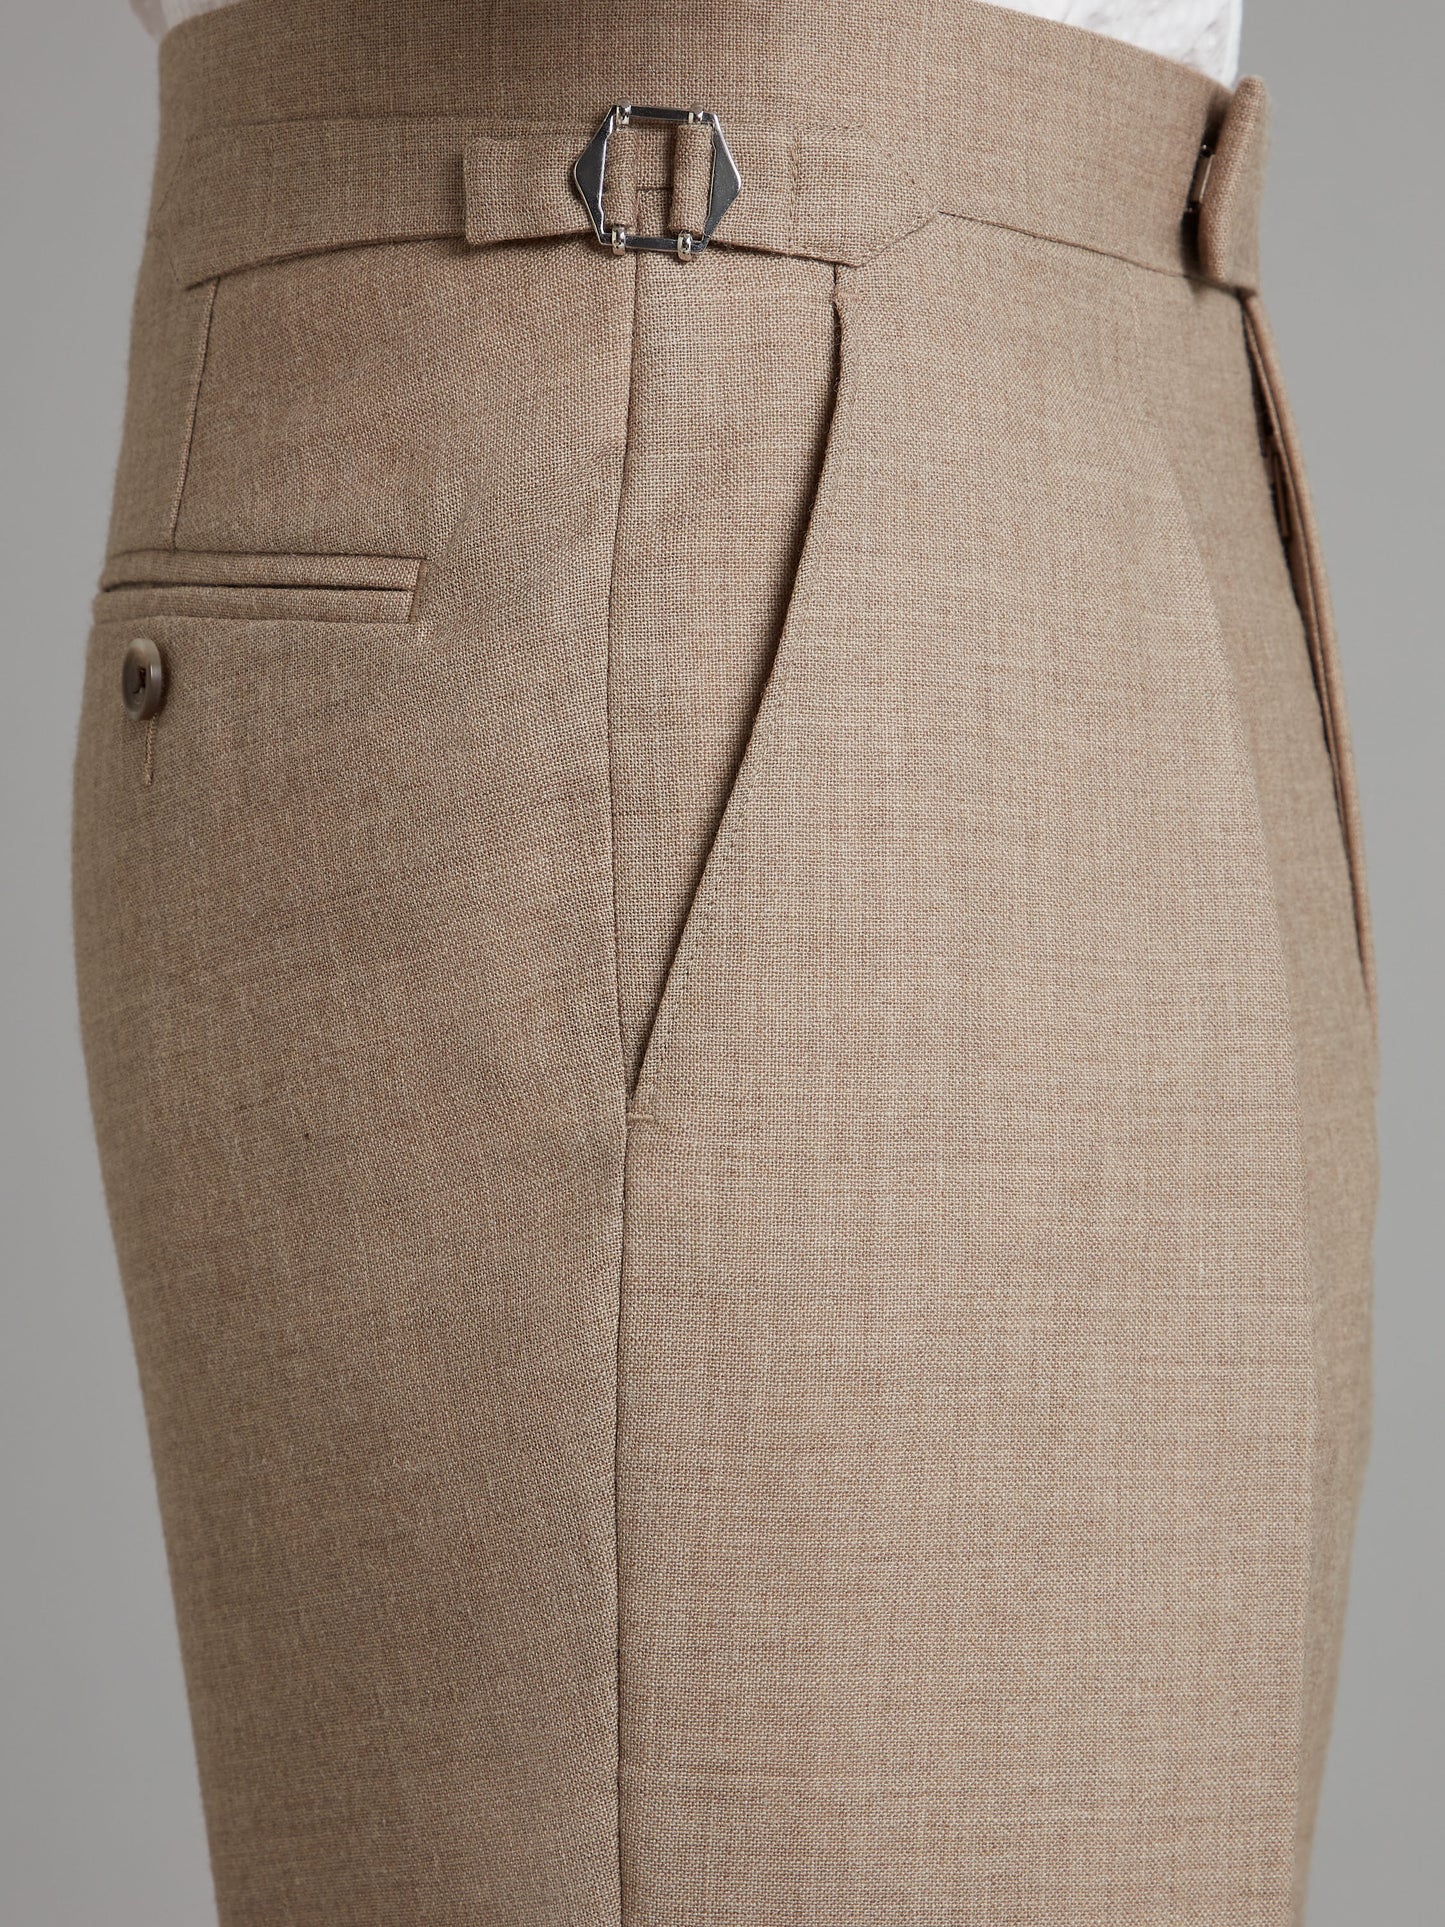 Pleated Trousers Wool - Beige Brown